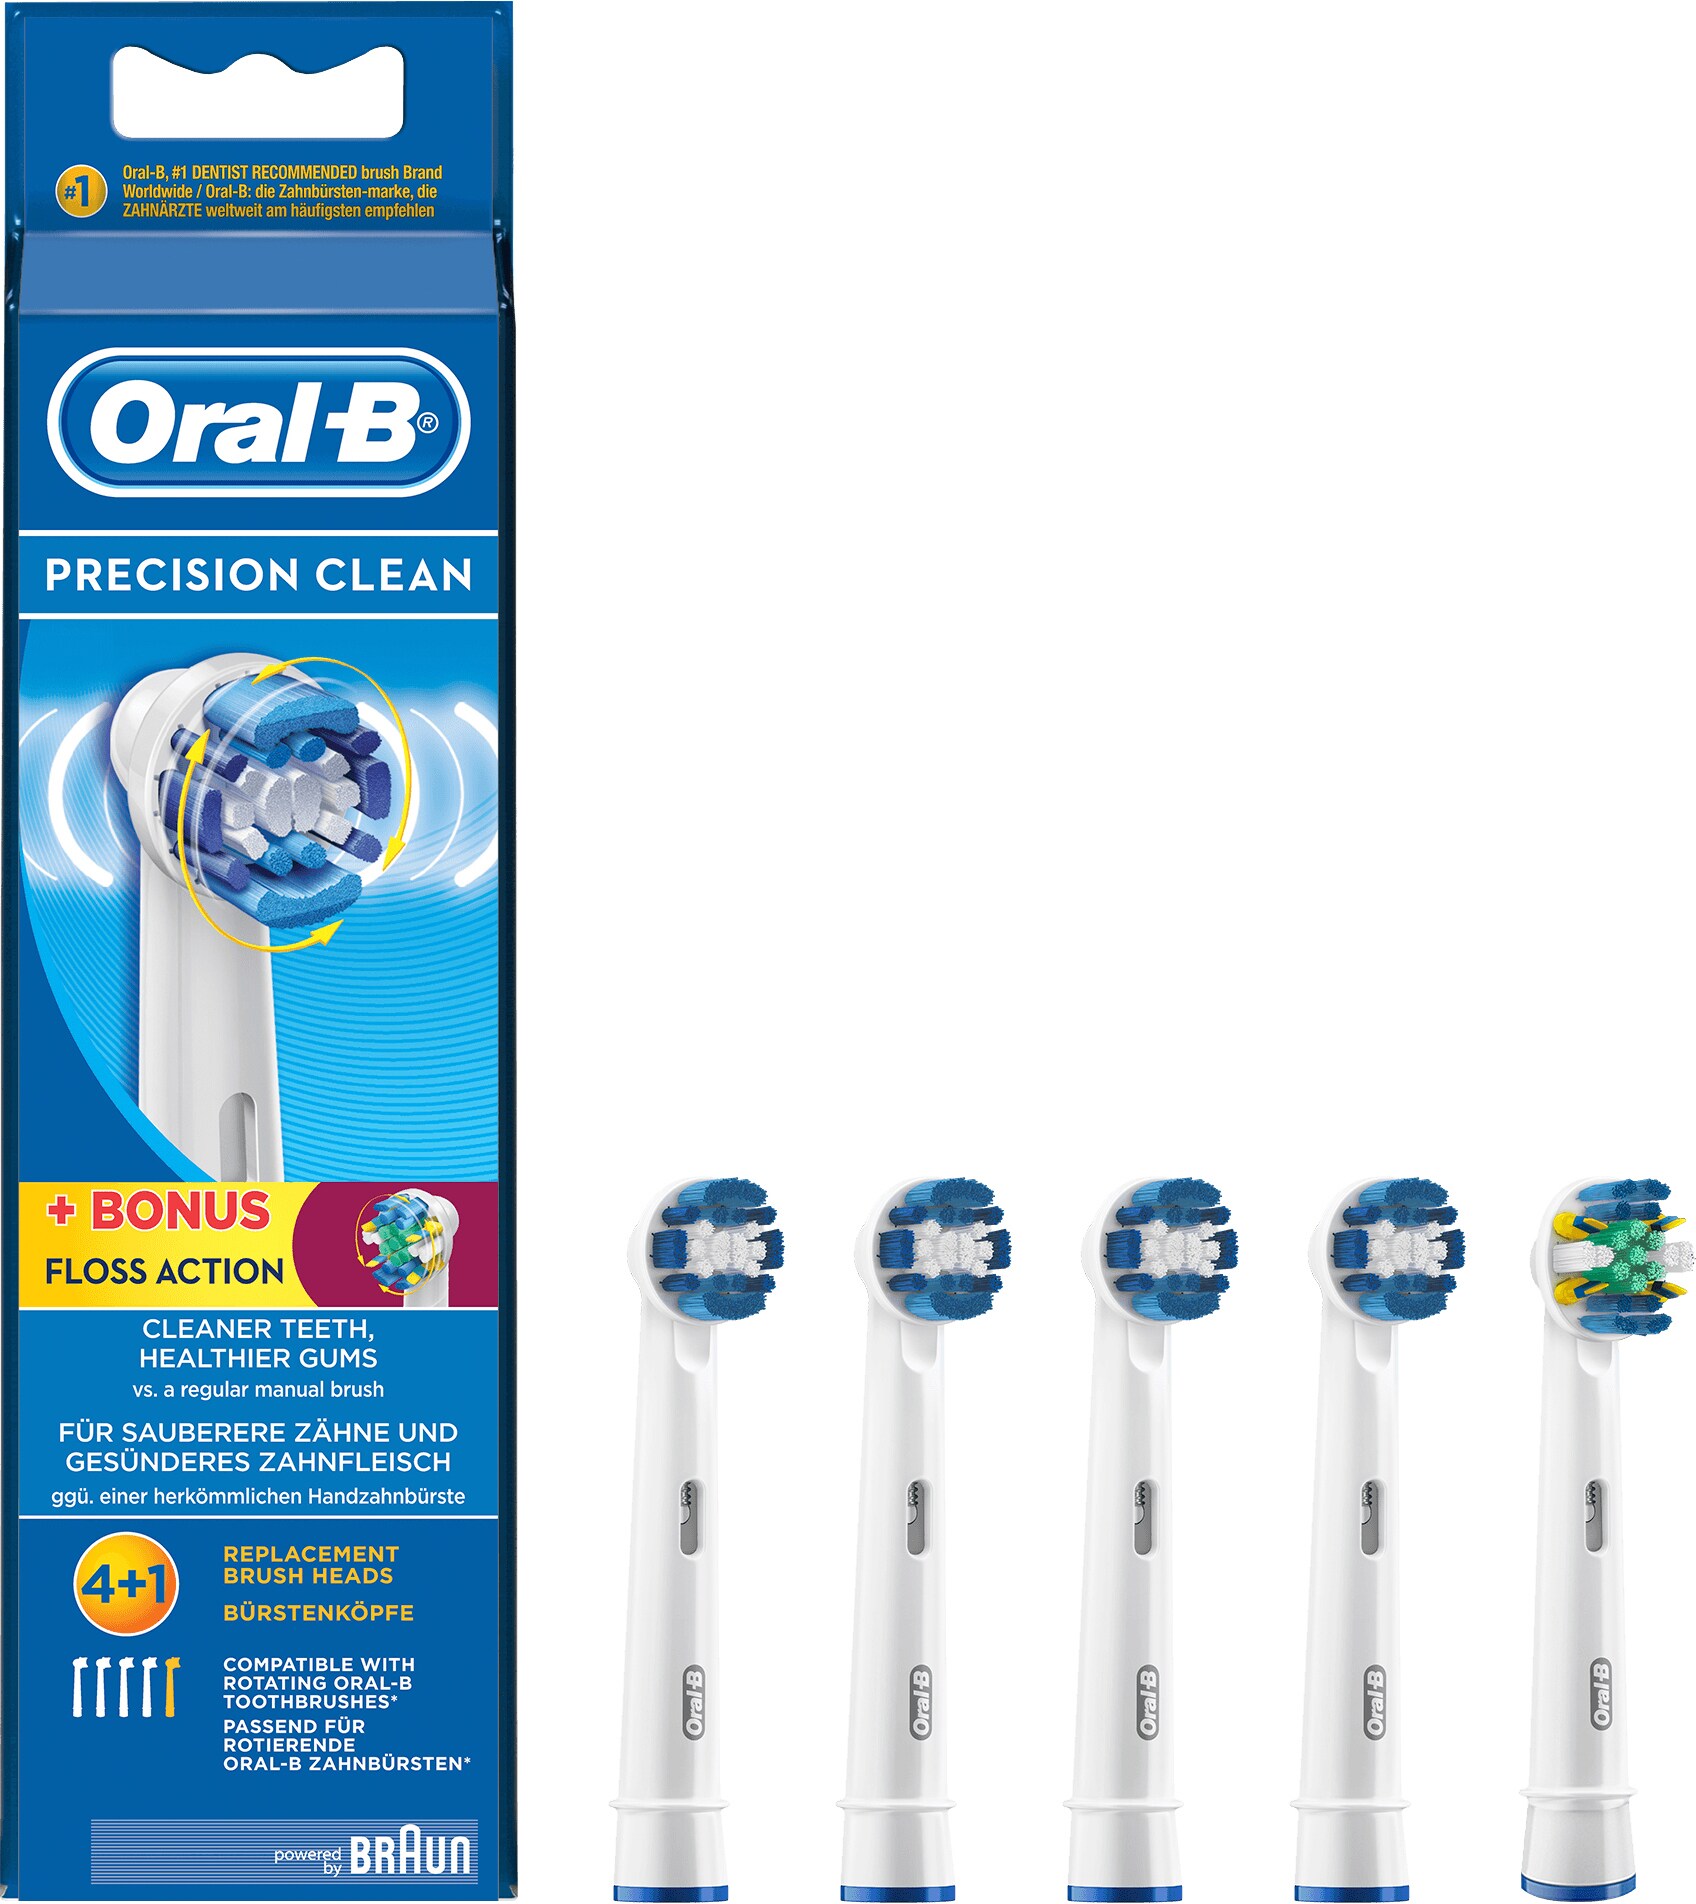 einfach Motivieren Welt tandbørste hoveder oral b Ende Besetzung Vorstellen